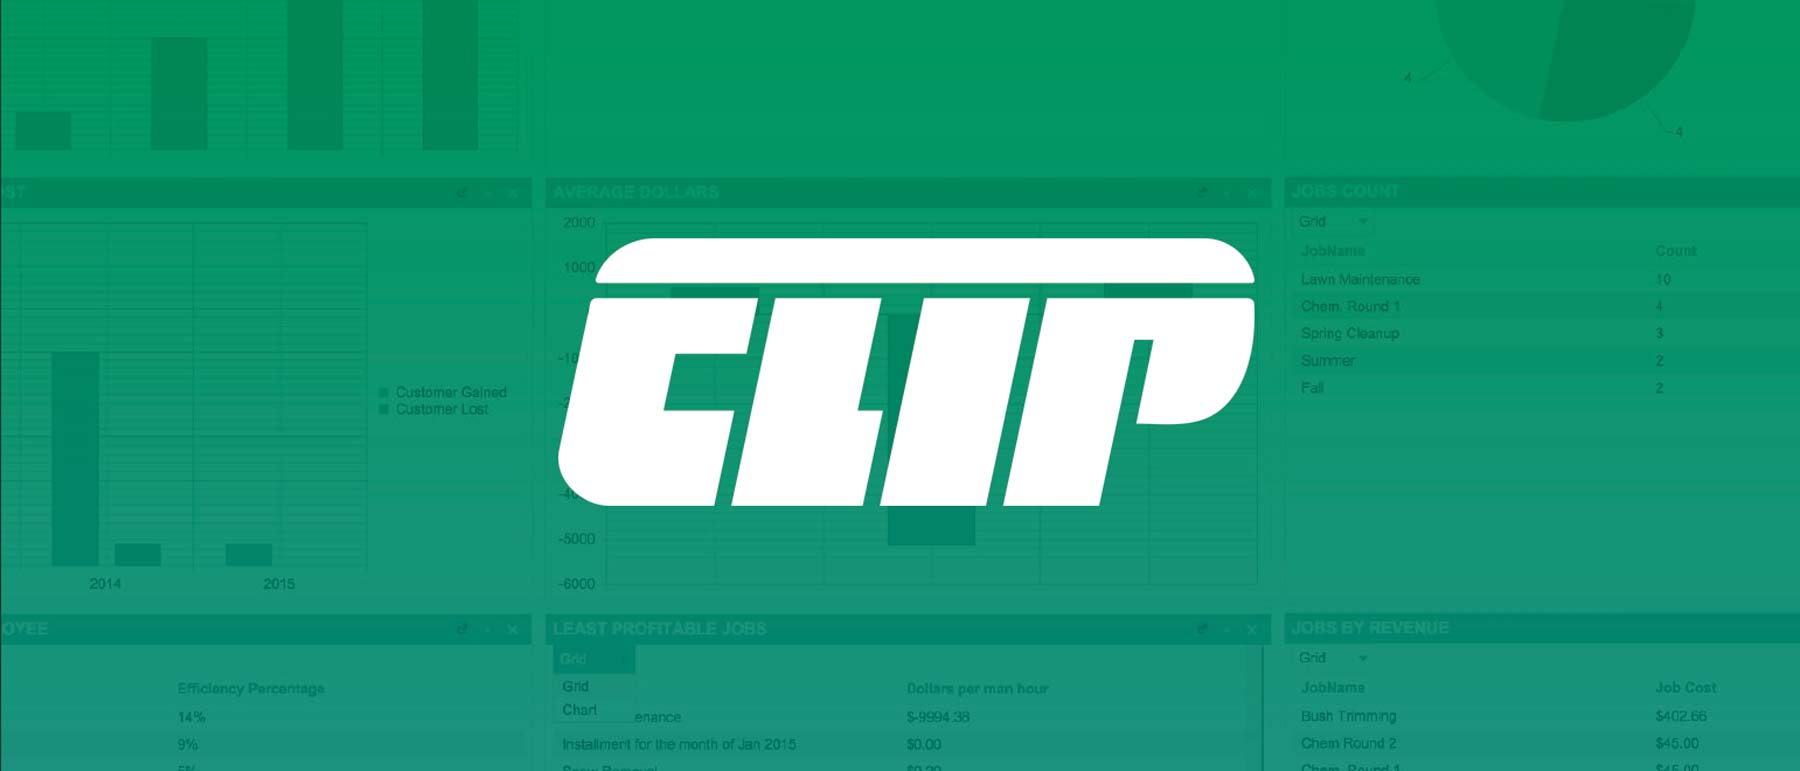 Clip Logo